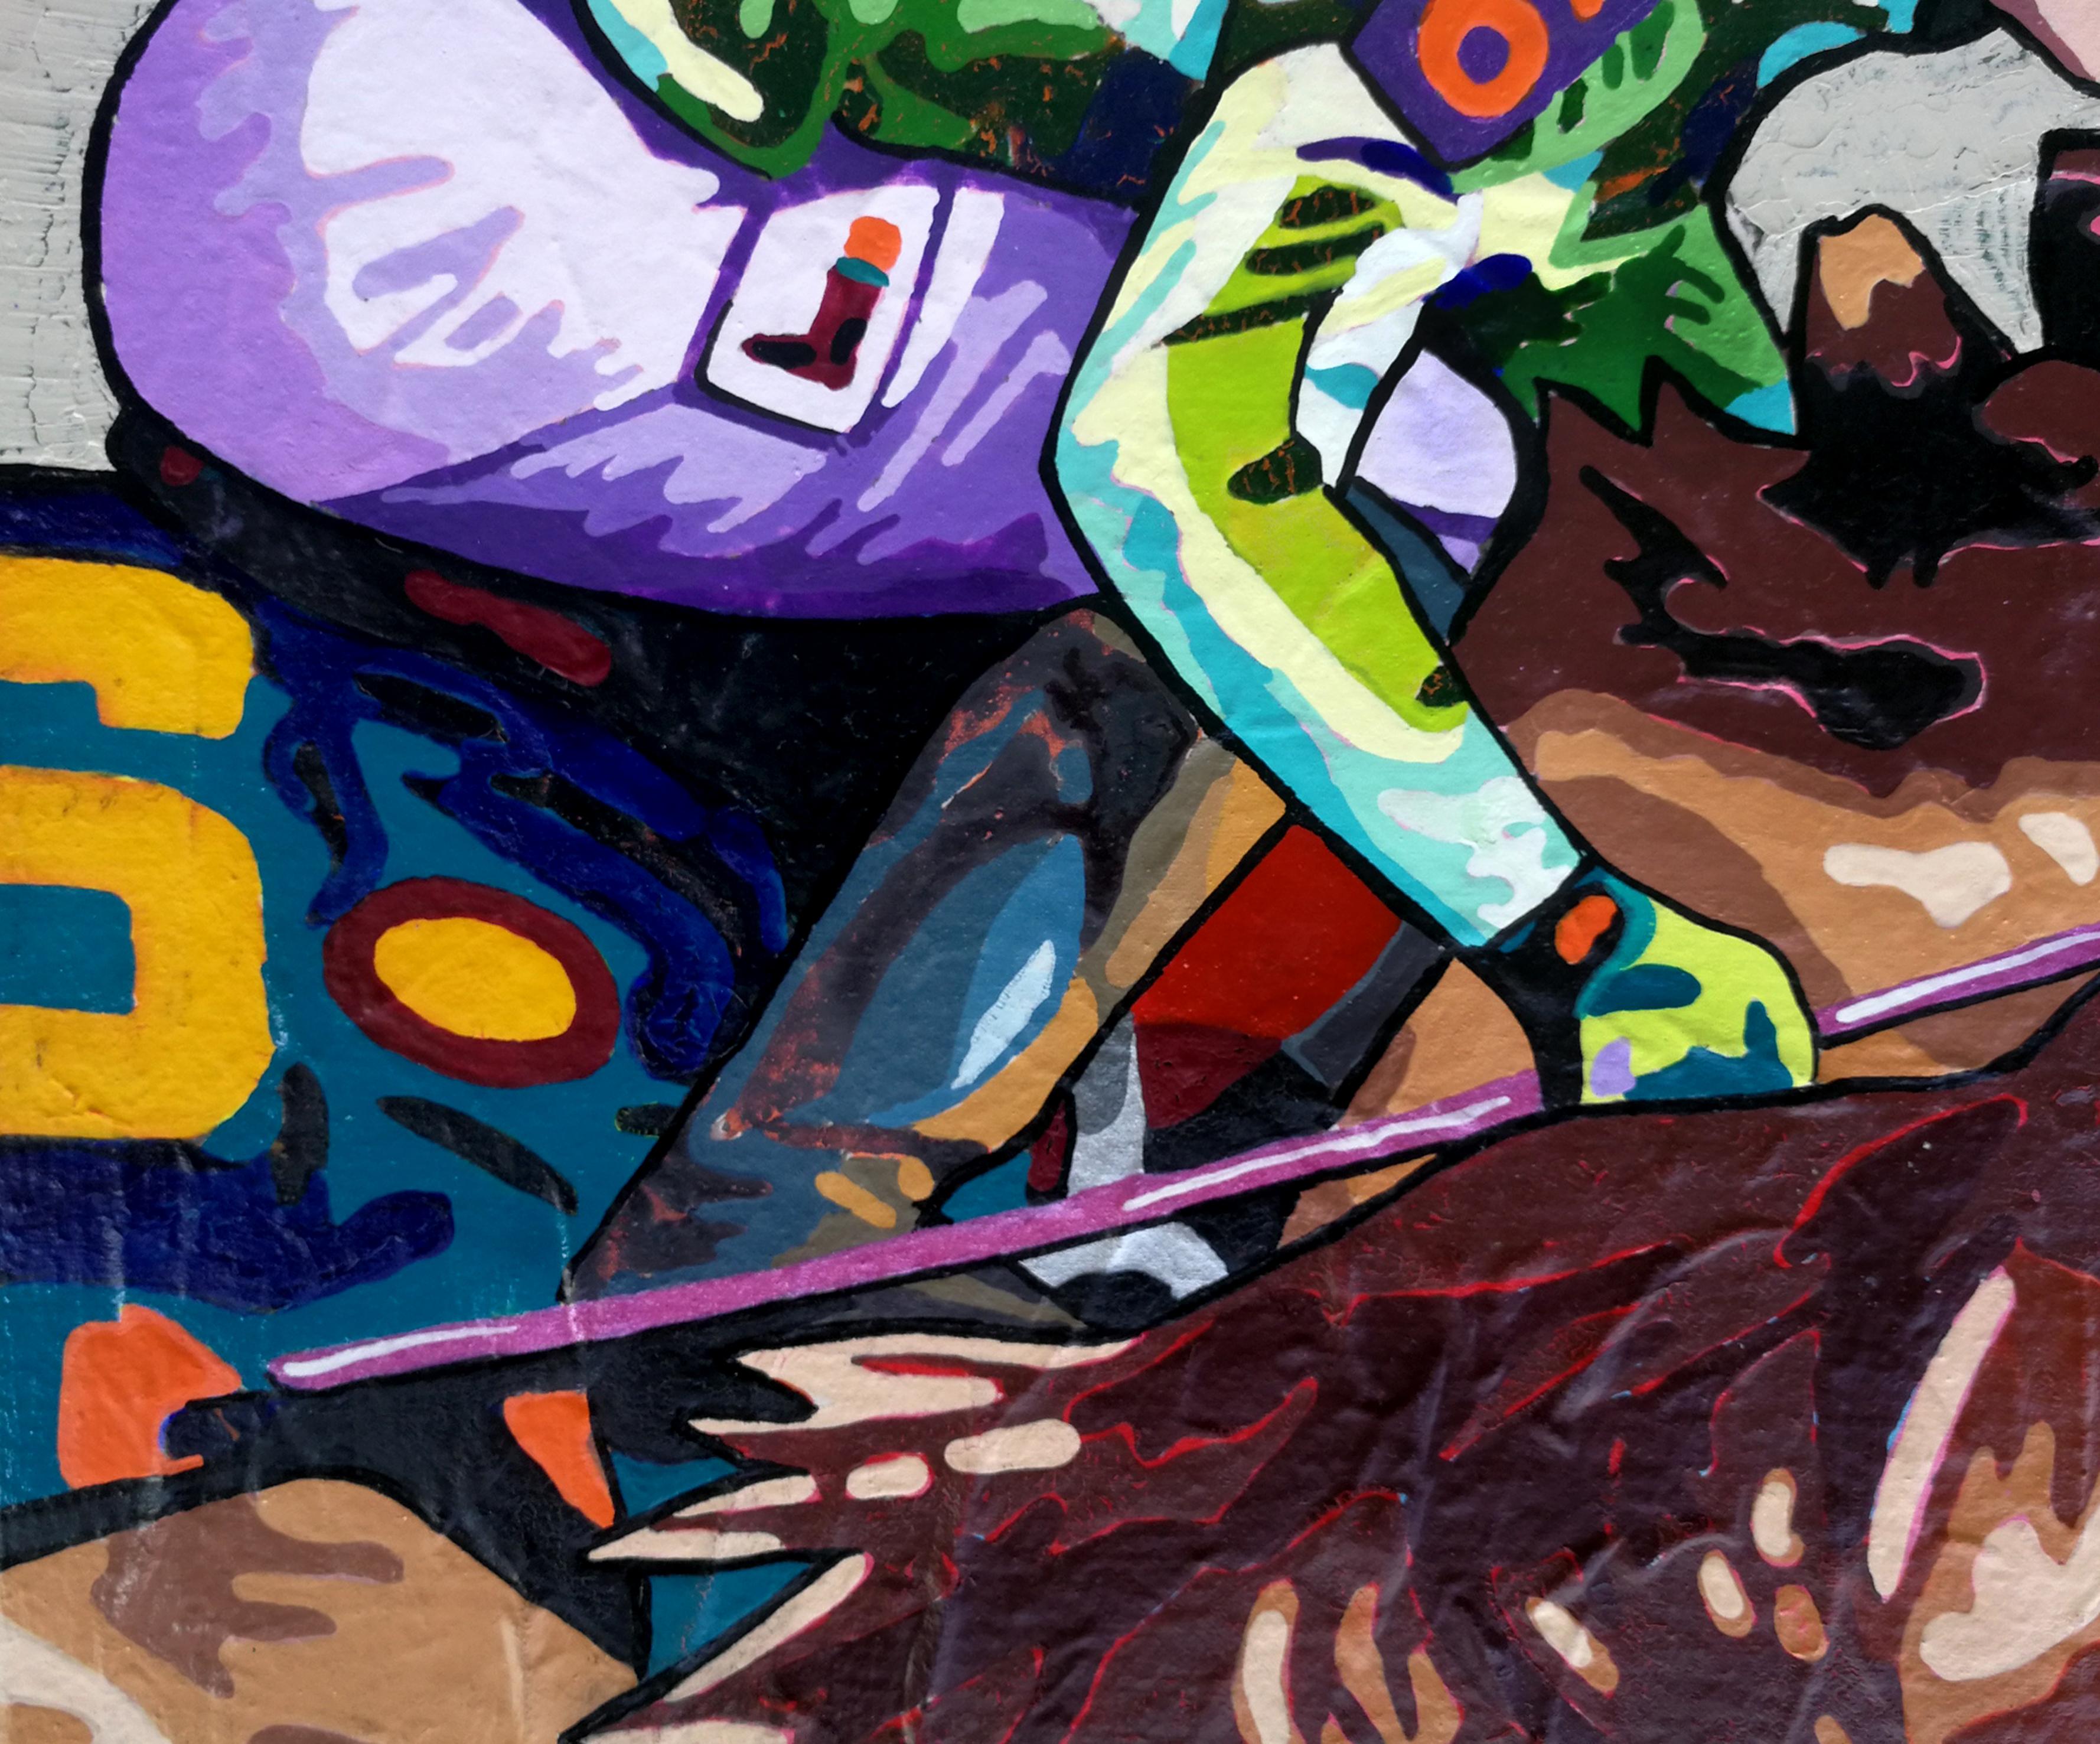 Wild Wildpferde, das Rennen - Gemälde in Braun, Weiß, Orange, Gelb, Grün, Blau und Rosa Grau (Pop-Art), Painting, von Vlado Vesselinov